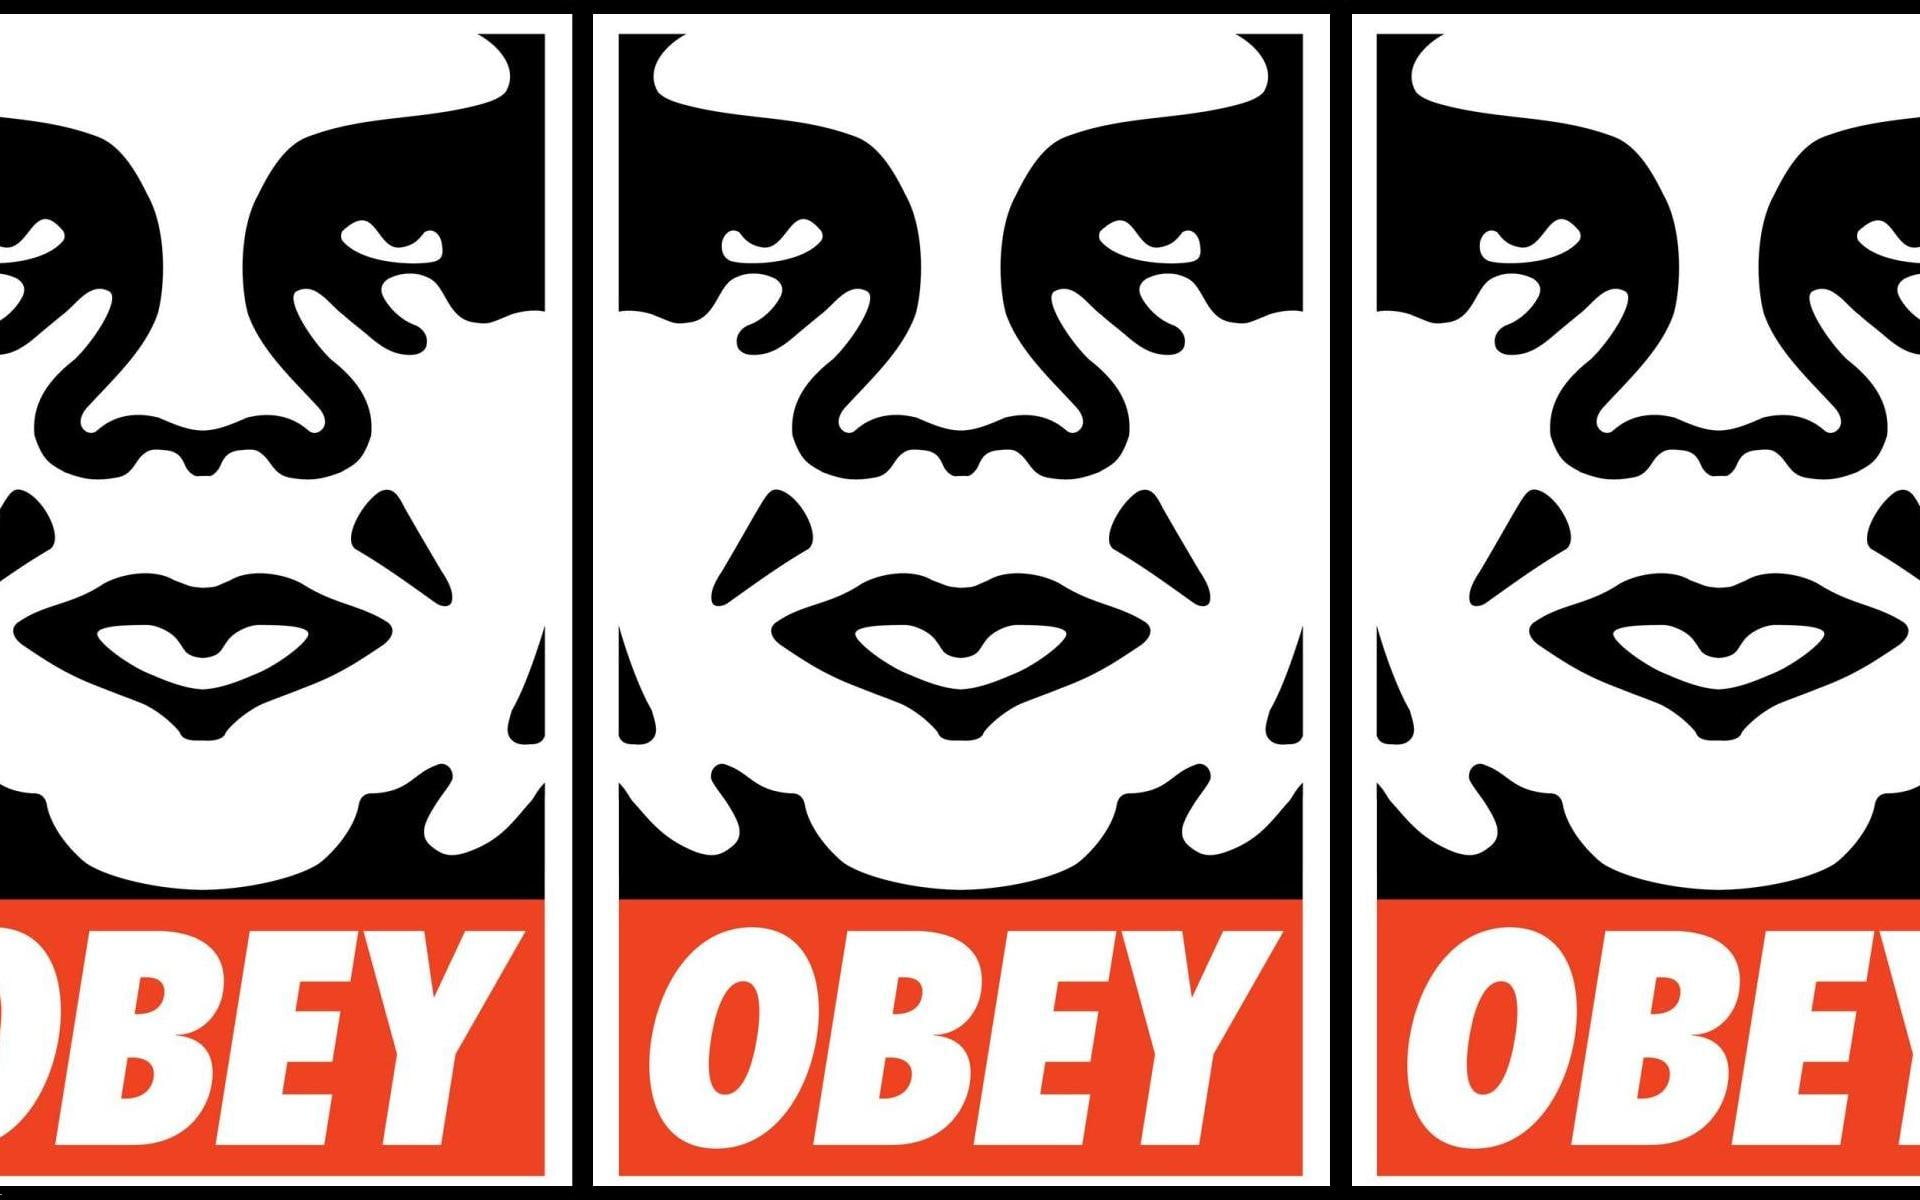 fairey, obey, shepard